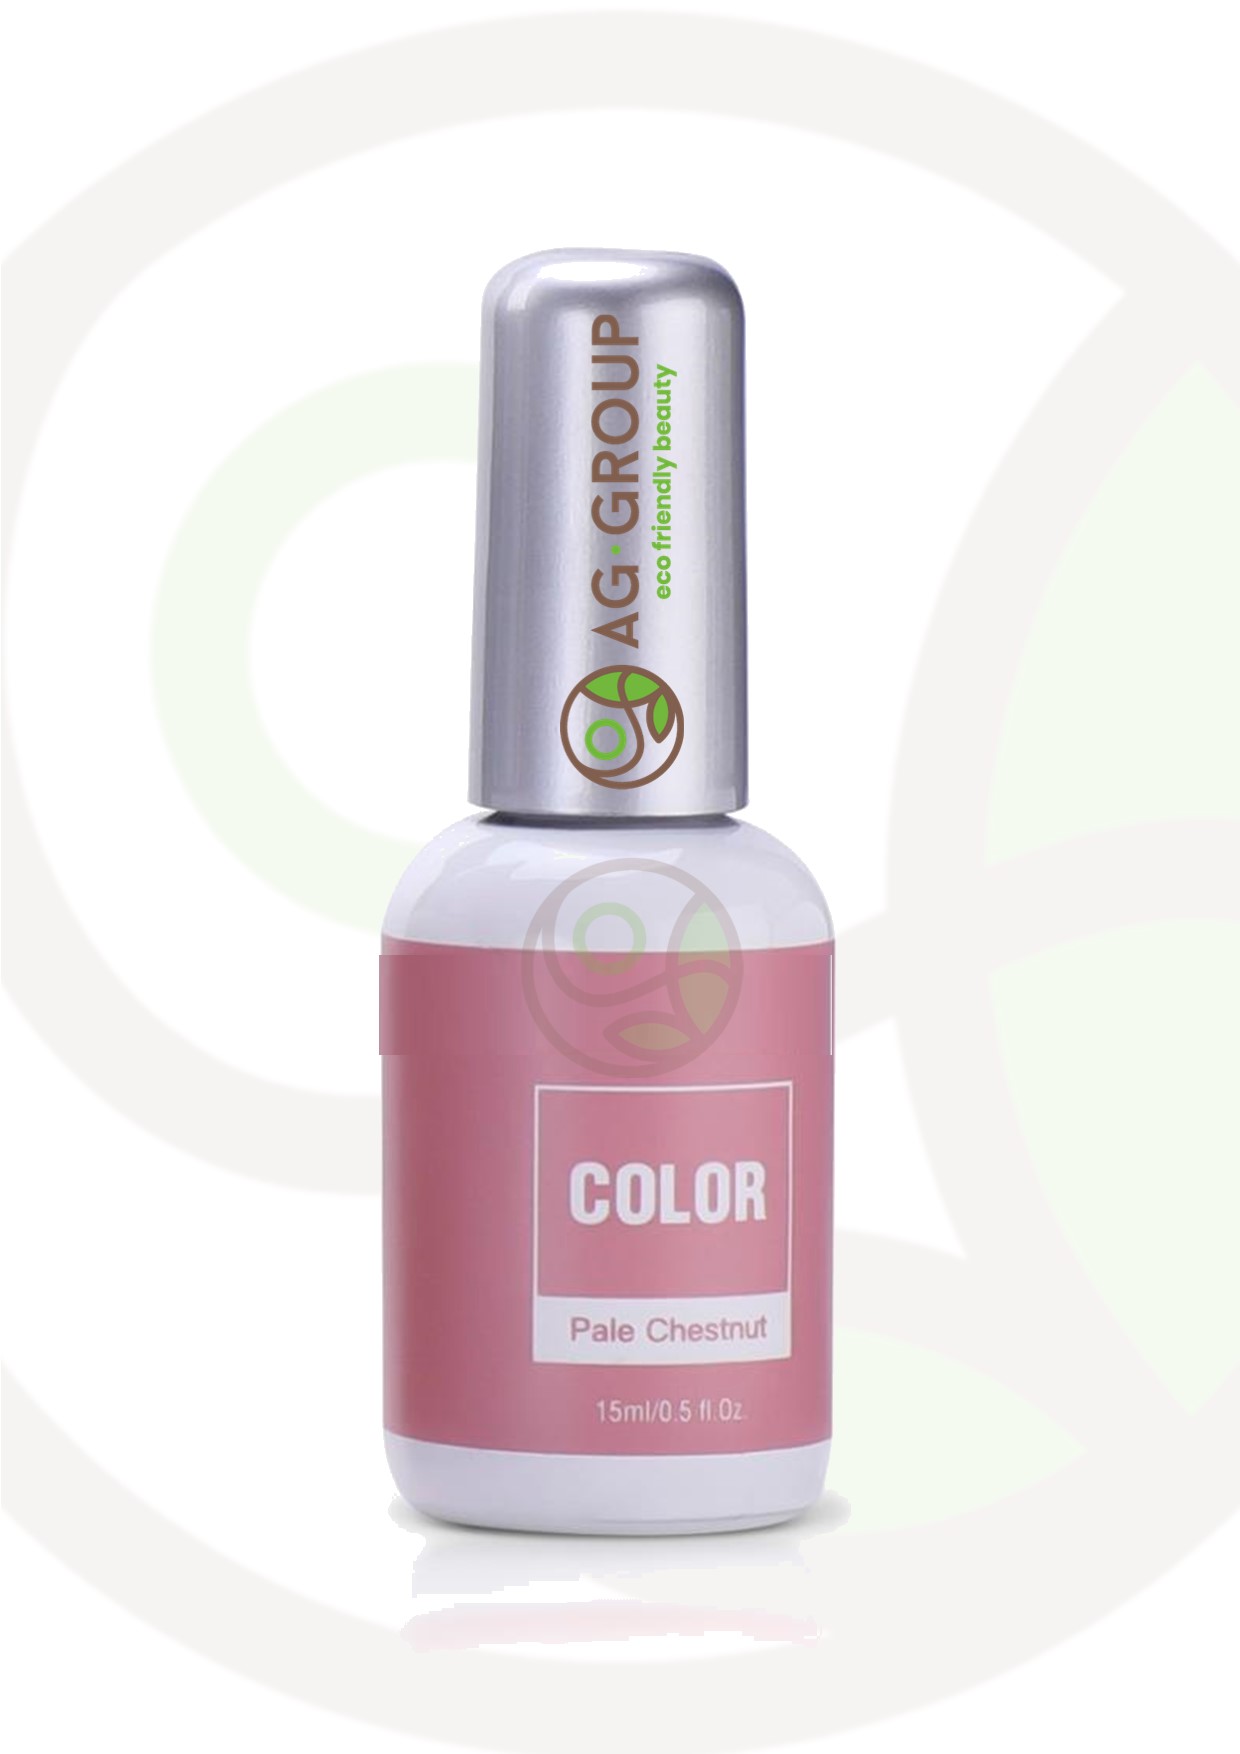 Featured image for “Gel polish soak -off led/uv- color pale chestnut”